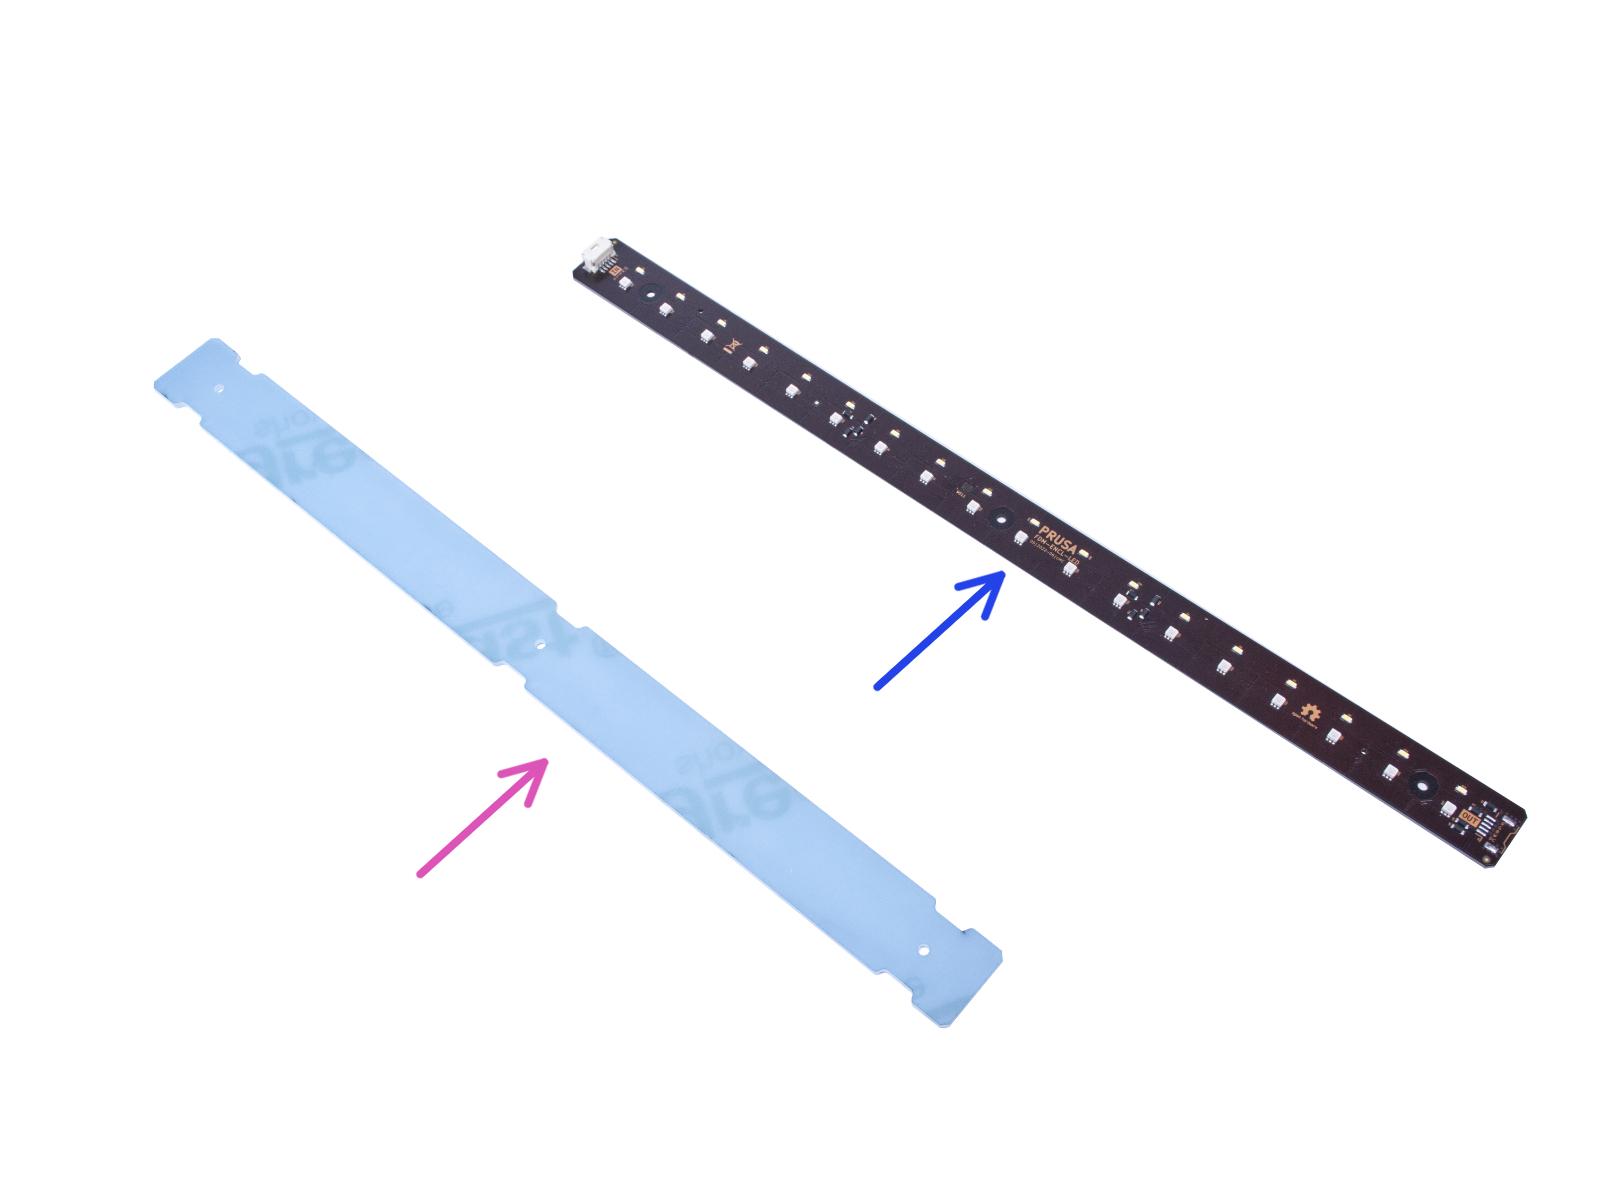 Zusammenbau des LED-Streifens: Vorbereitung der Teile